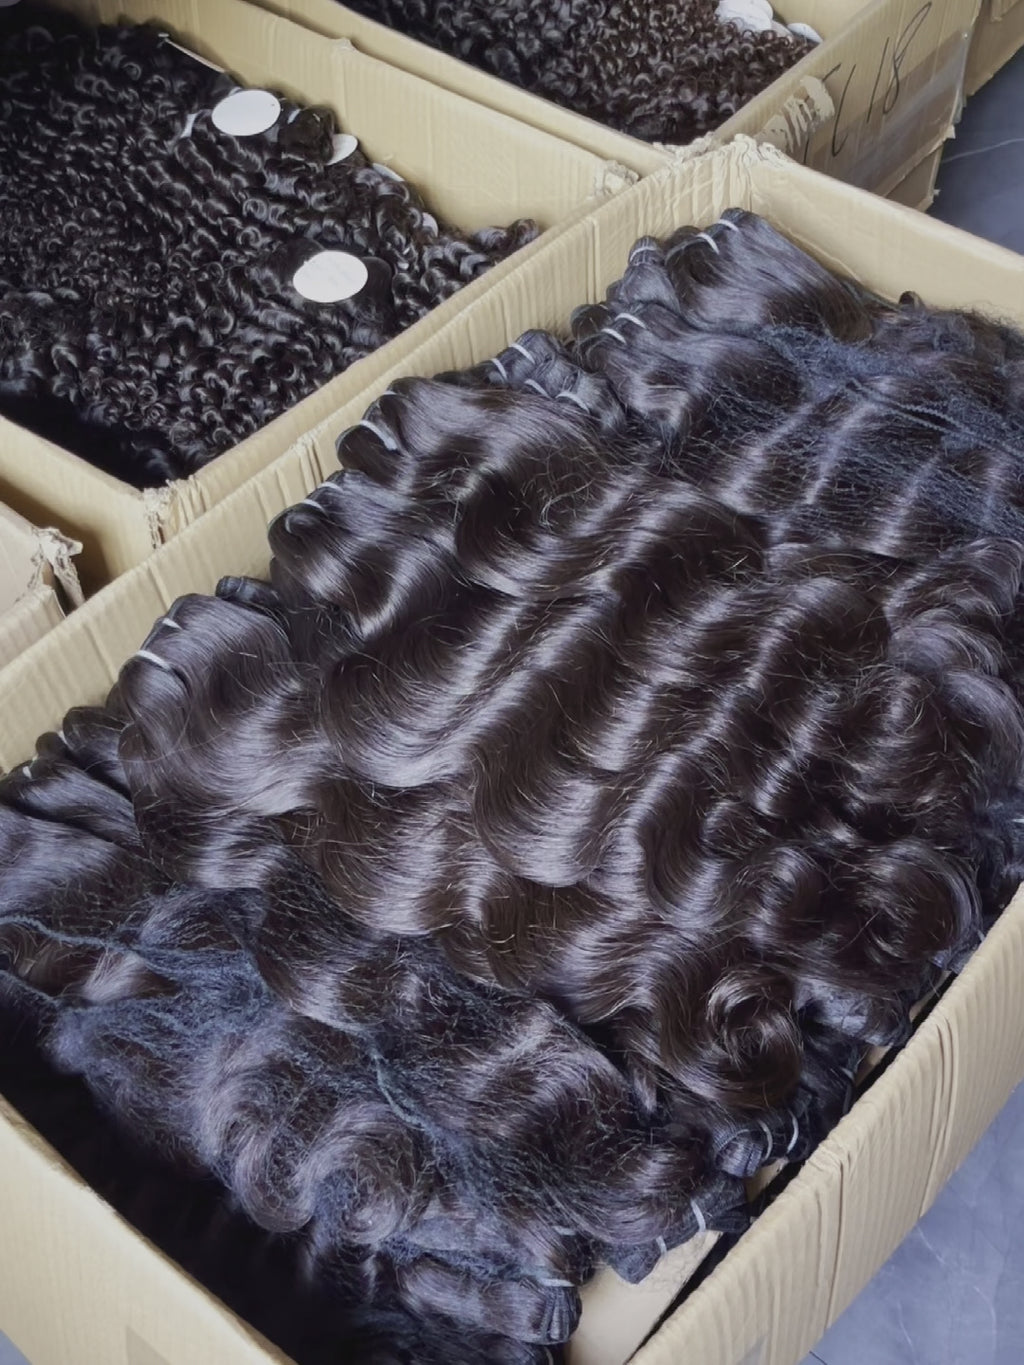 QWB Deep Wave 3 Bundles Deal Brazilian Virgin Hair – Queen Weave Beauty